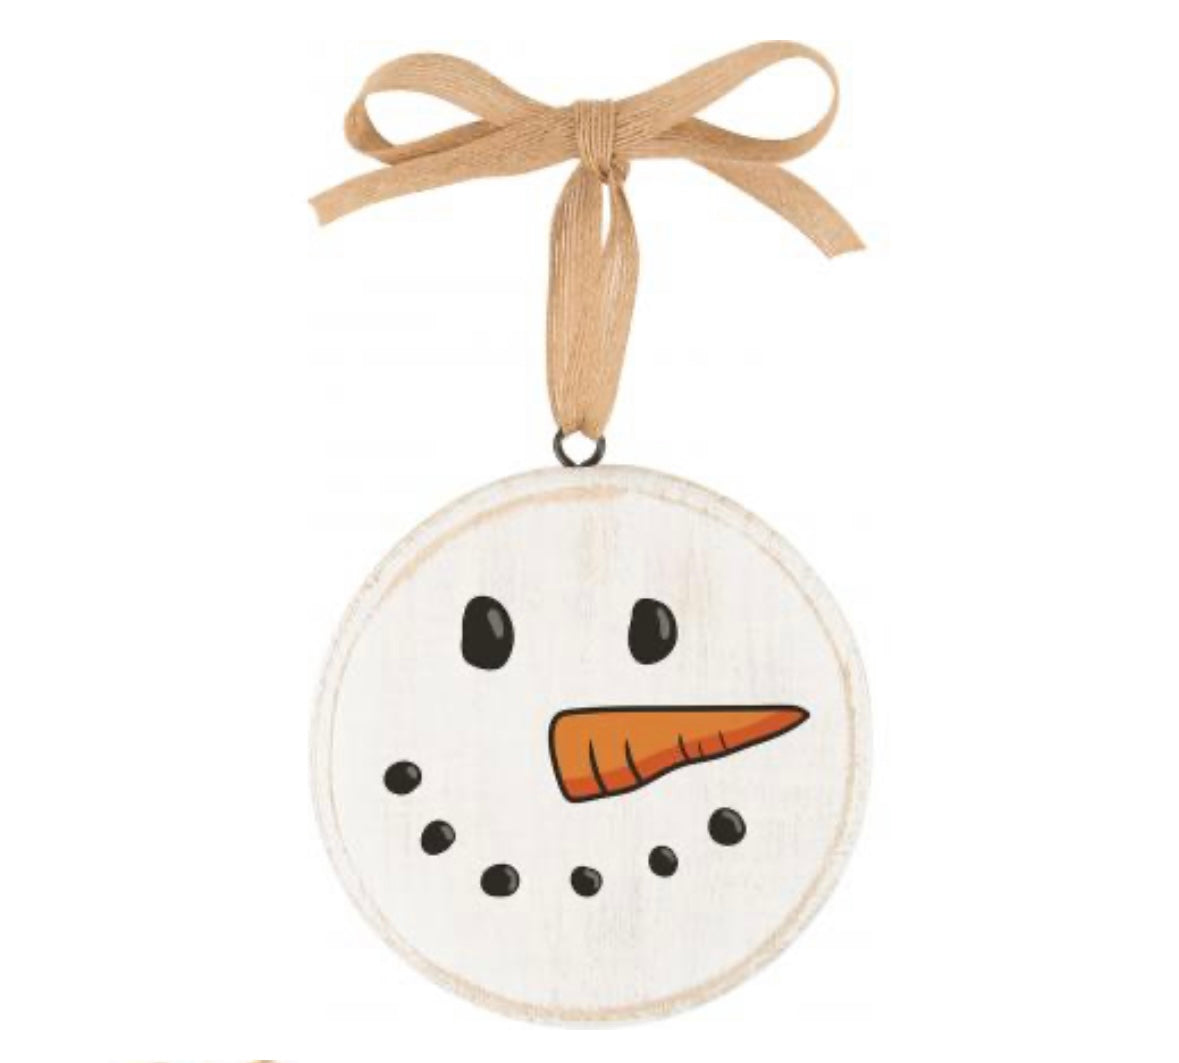 Snowman Face Ornament